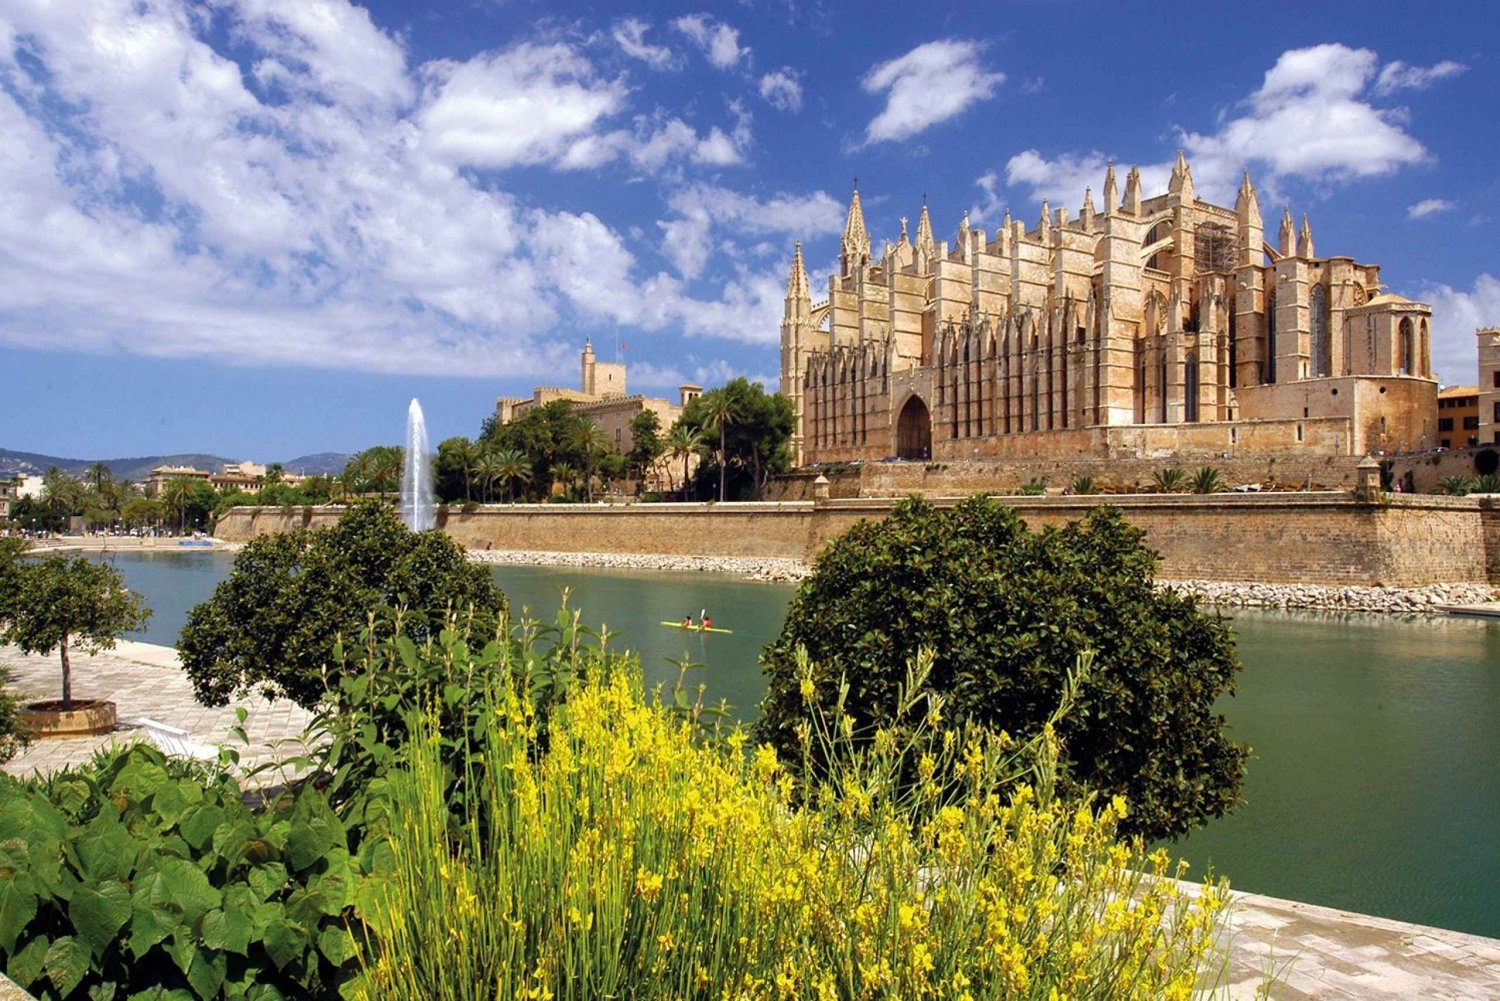 Palma de Mallorca: Excursão a pé pela cidade com a Catedral